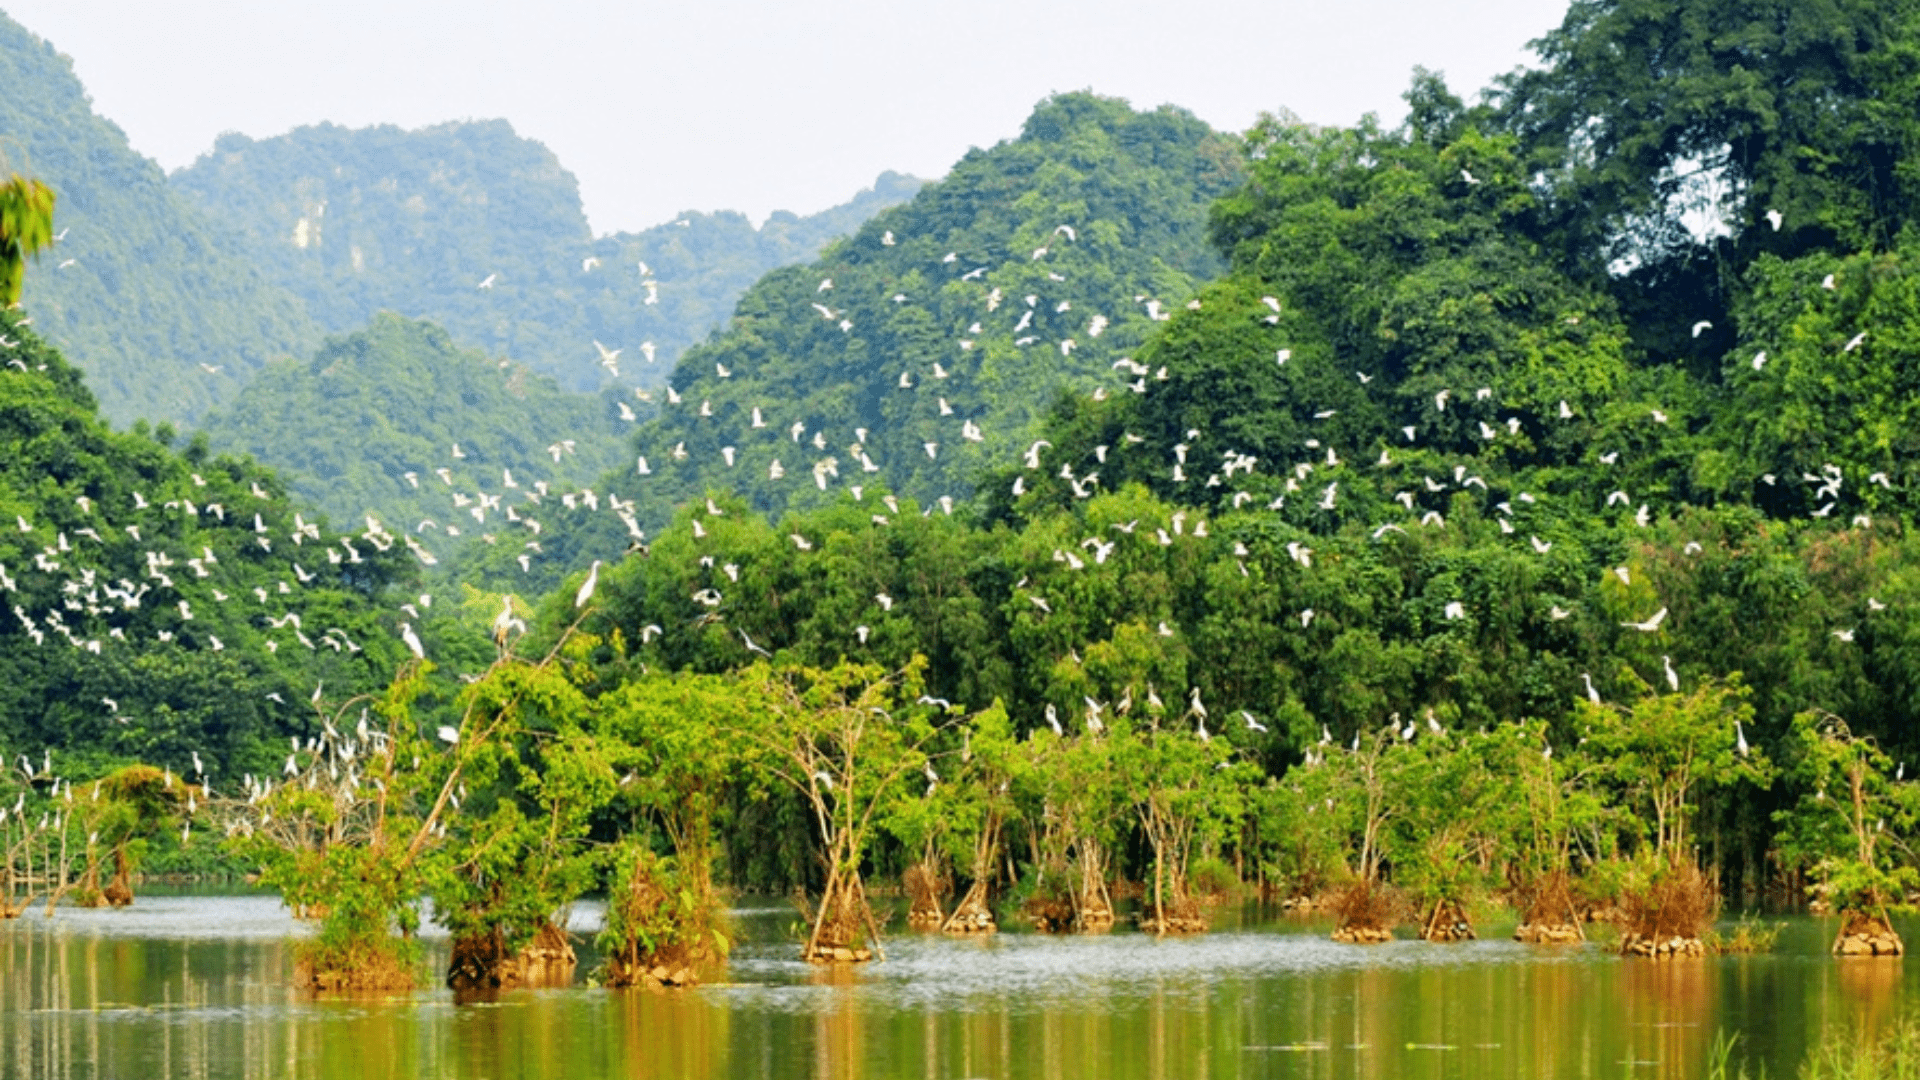 Khu đa dạng sinh học Lâm ngư trường 184 – Rừng đước Năm Căn, địa điểm sinh thái siêu hot tại Cà Mau